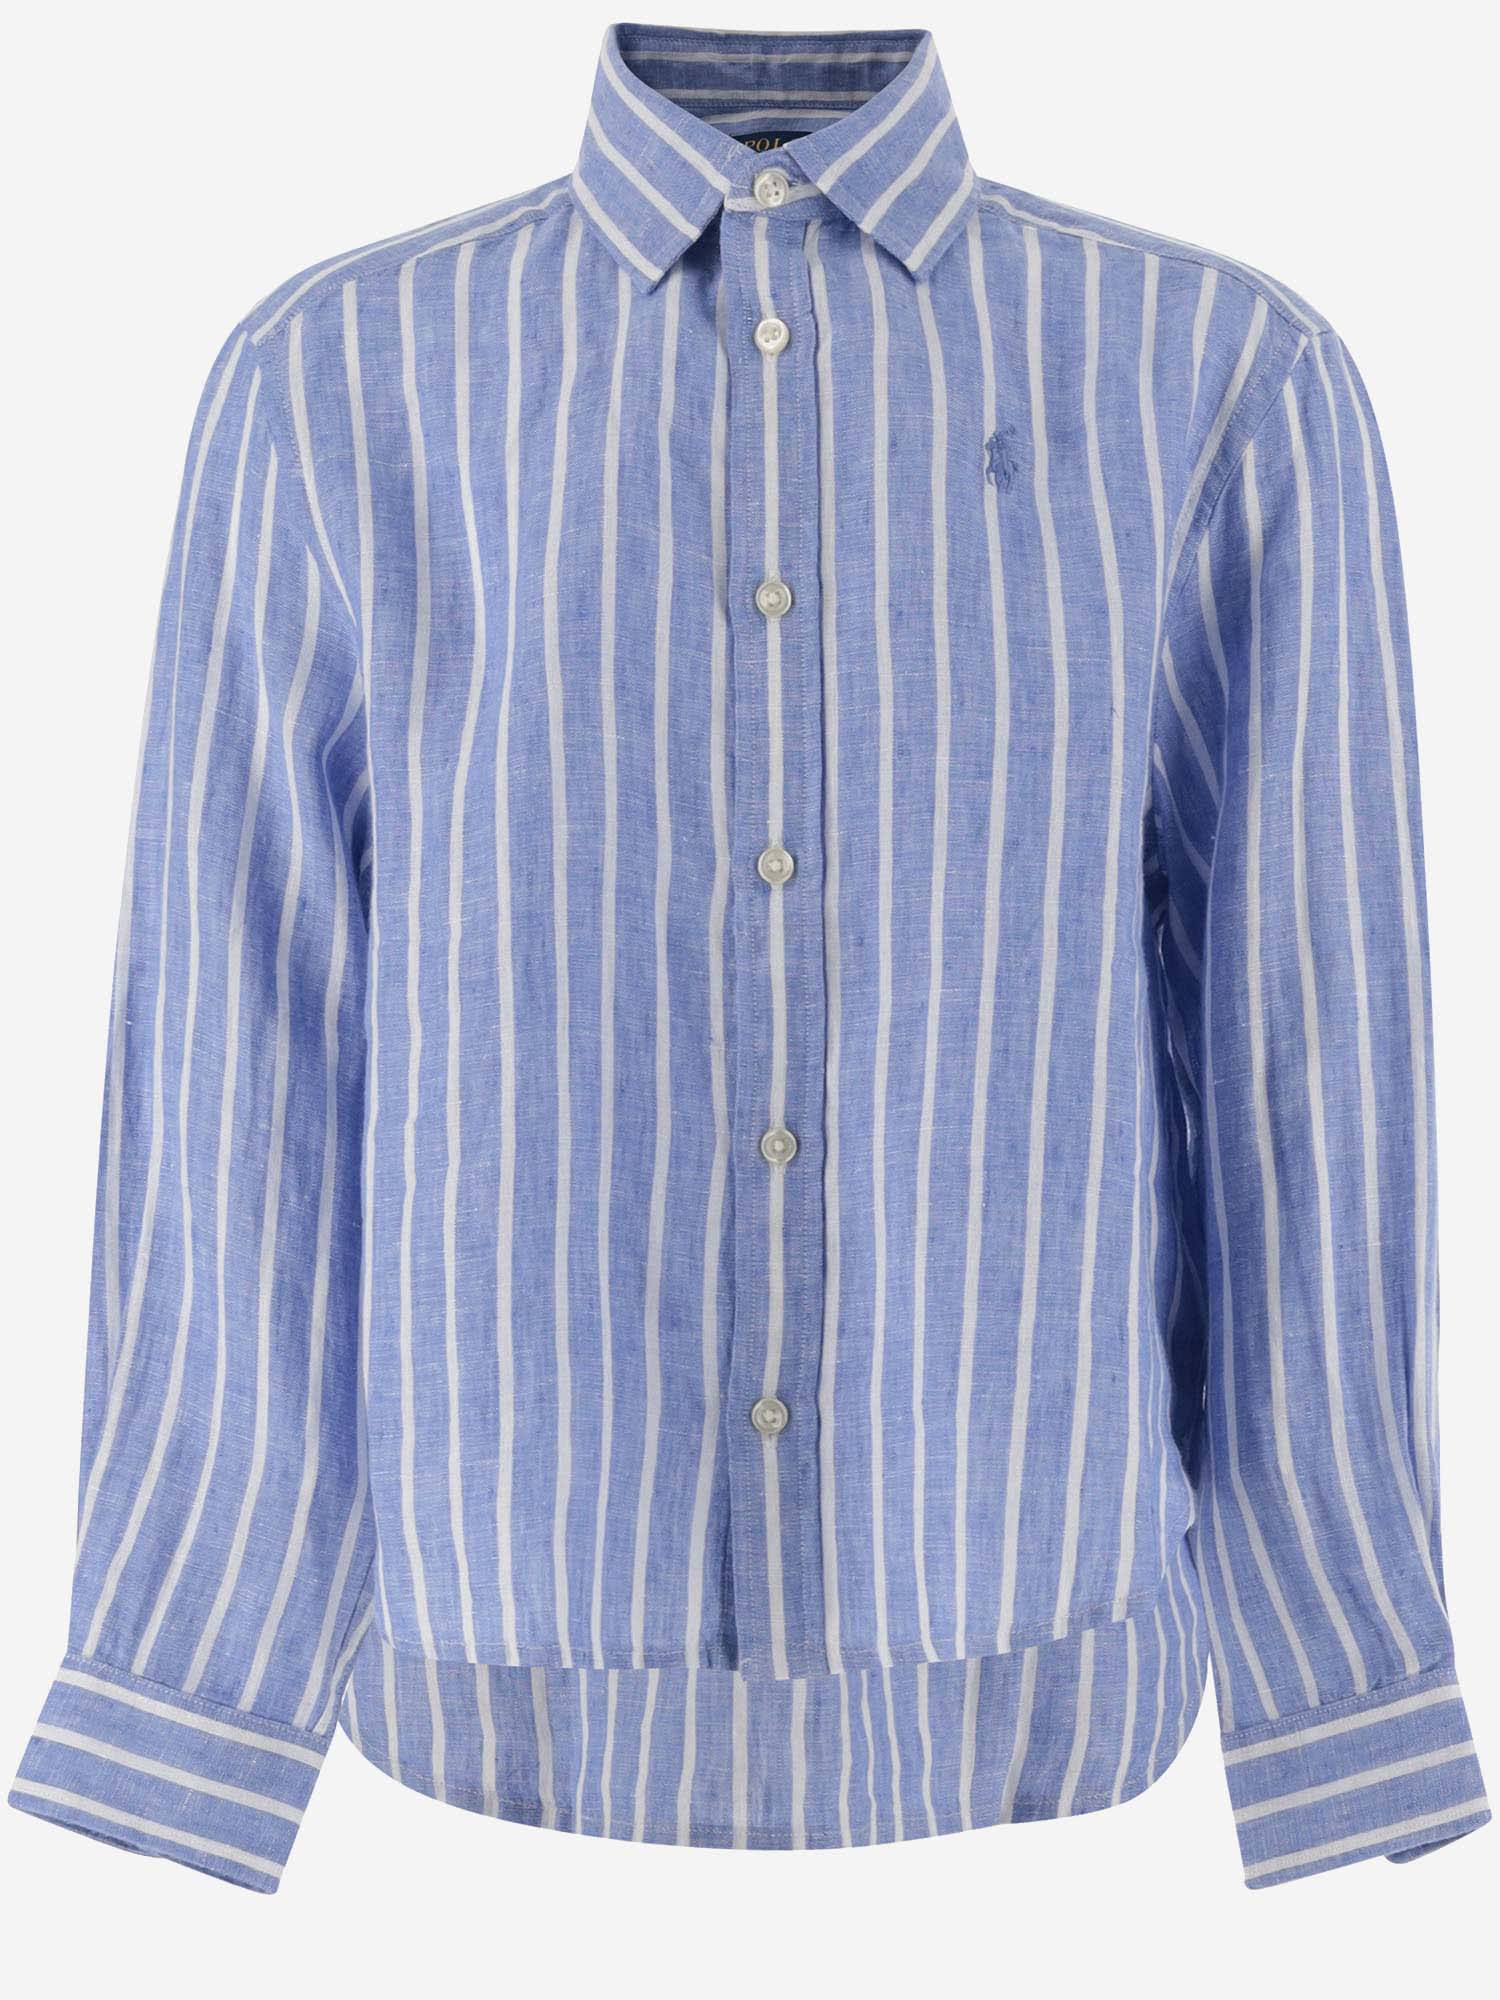 Ralph Lauren Kids' Striped Linen Shirt With Logo In Light Blue